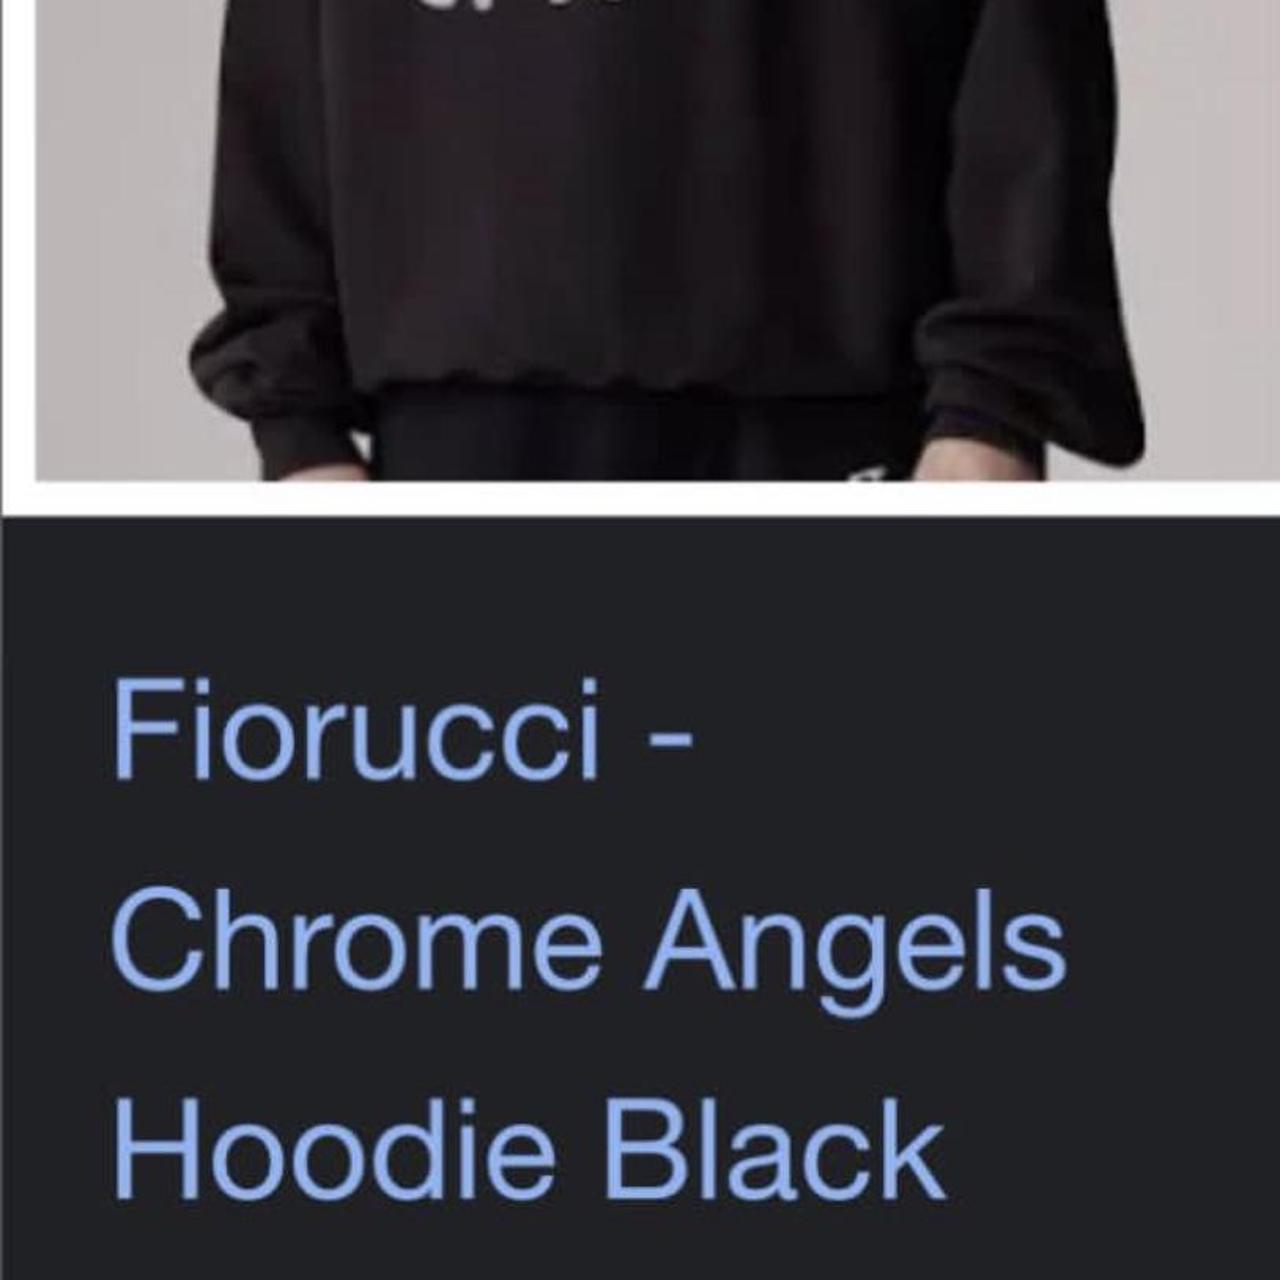 Fiorucci: Black Angels Hoodie